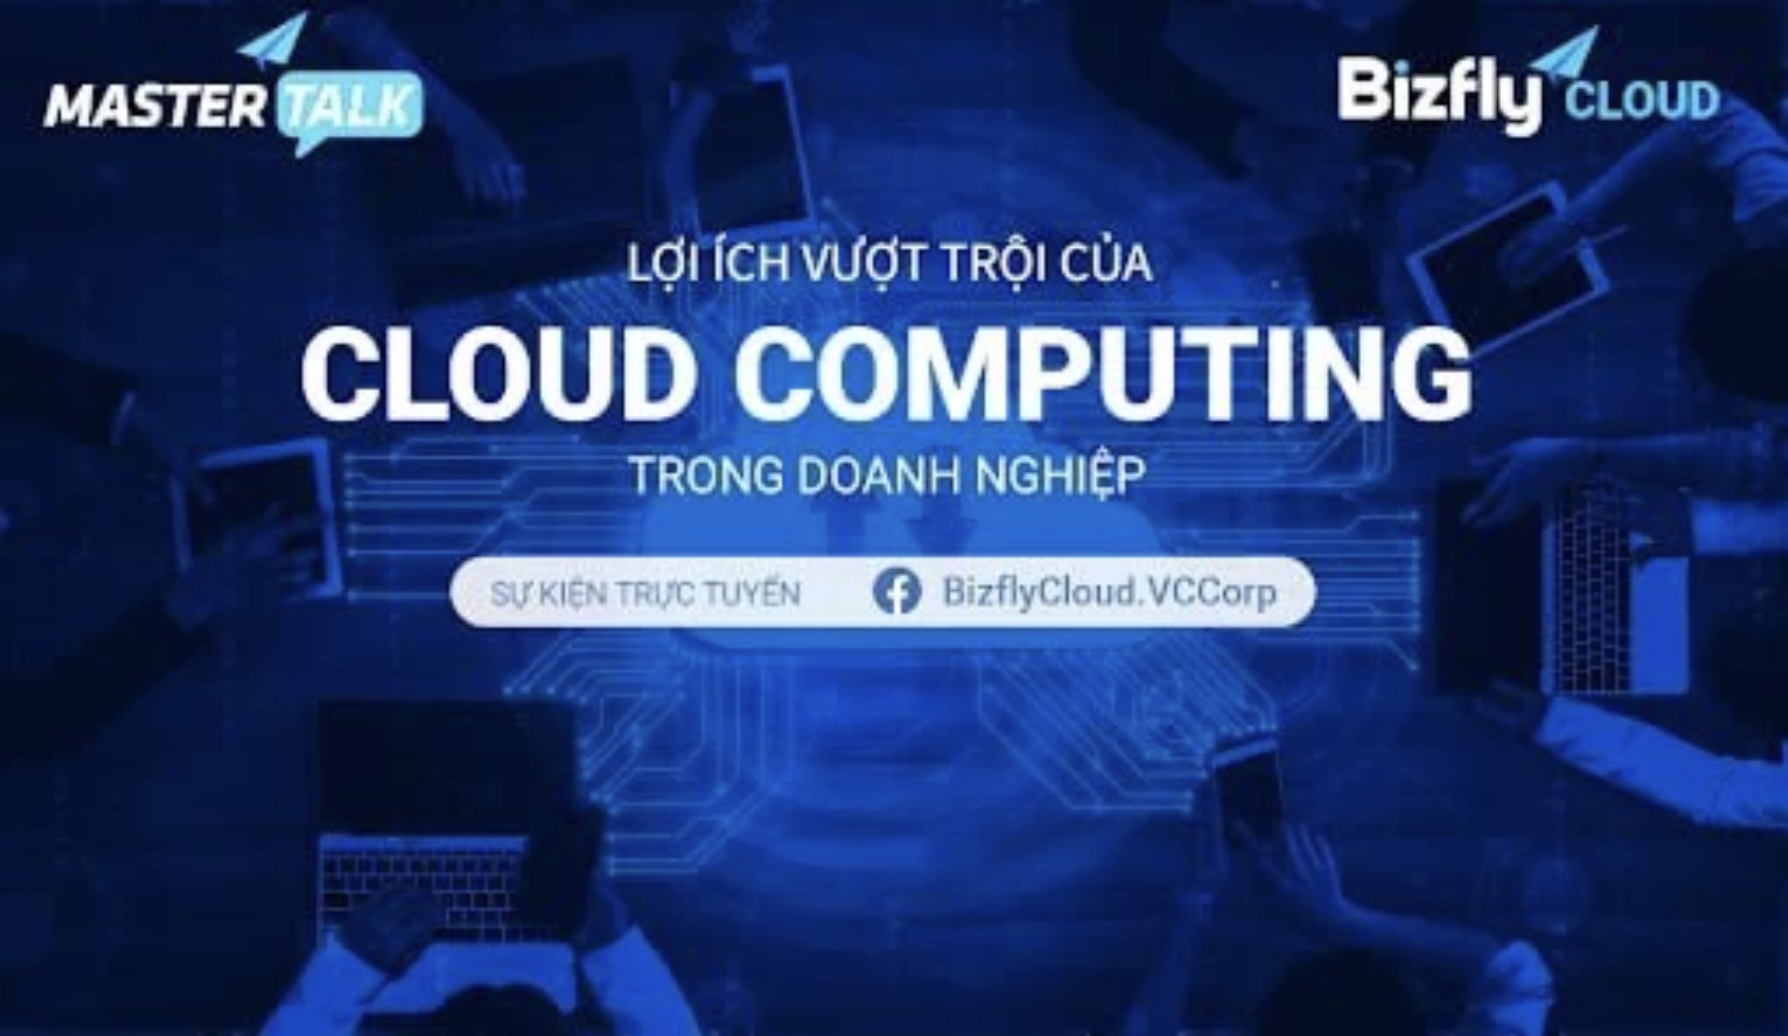 [Trực tuyến] Lợi ích vượt trội của Cloud Computing trong doanh nghiệp: Ứng dụng thực tế